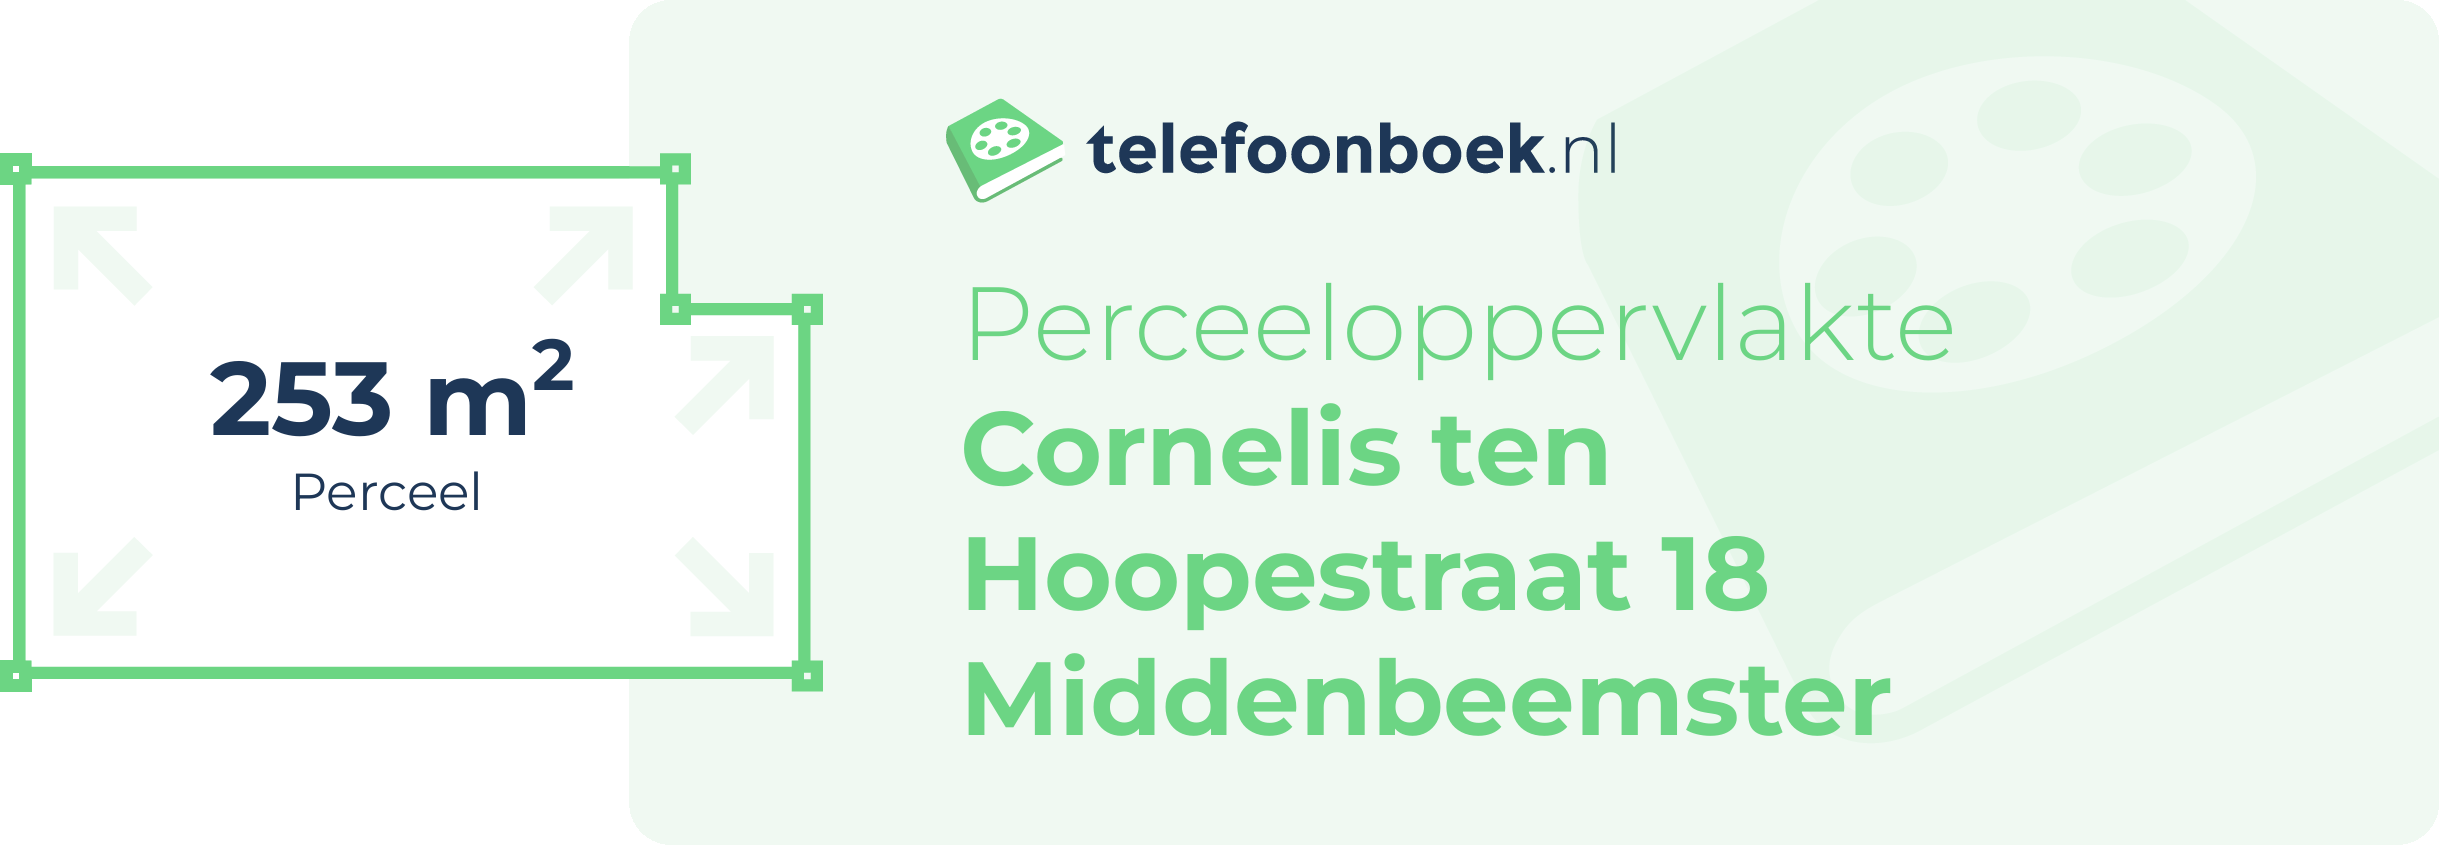 Perceeloppervlakte Cornelis Ten Hoopestraat 18 Middenbeemster